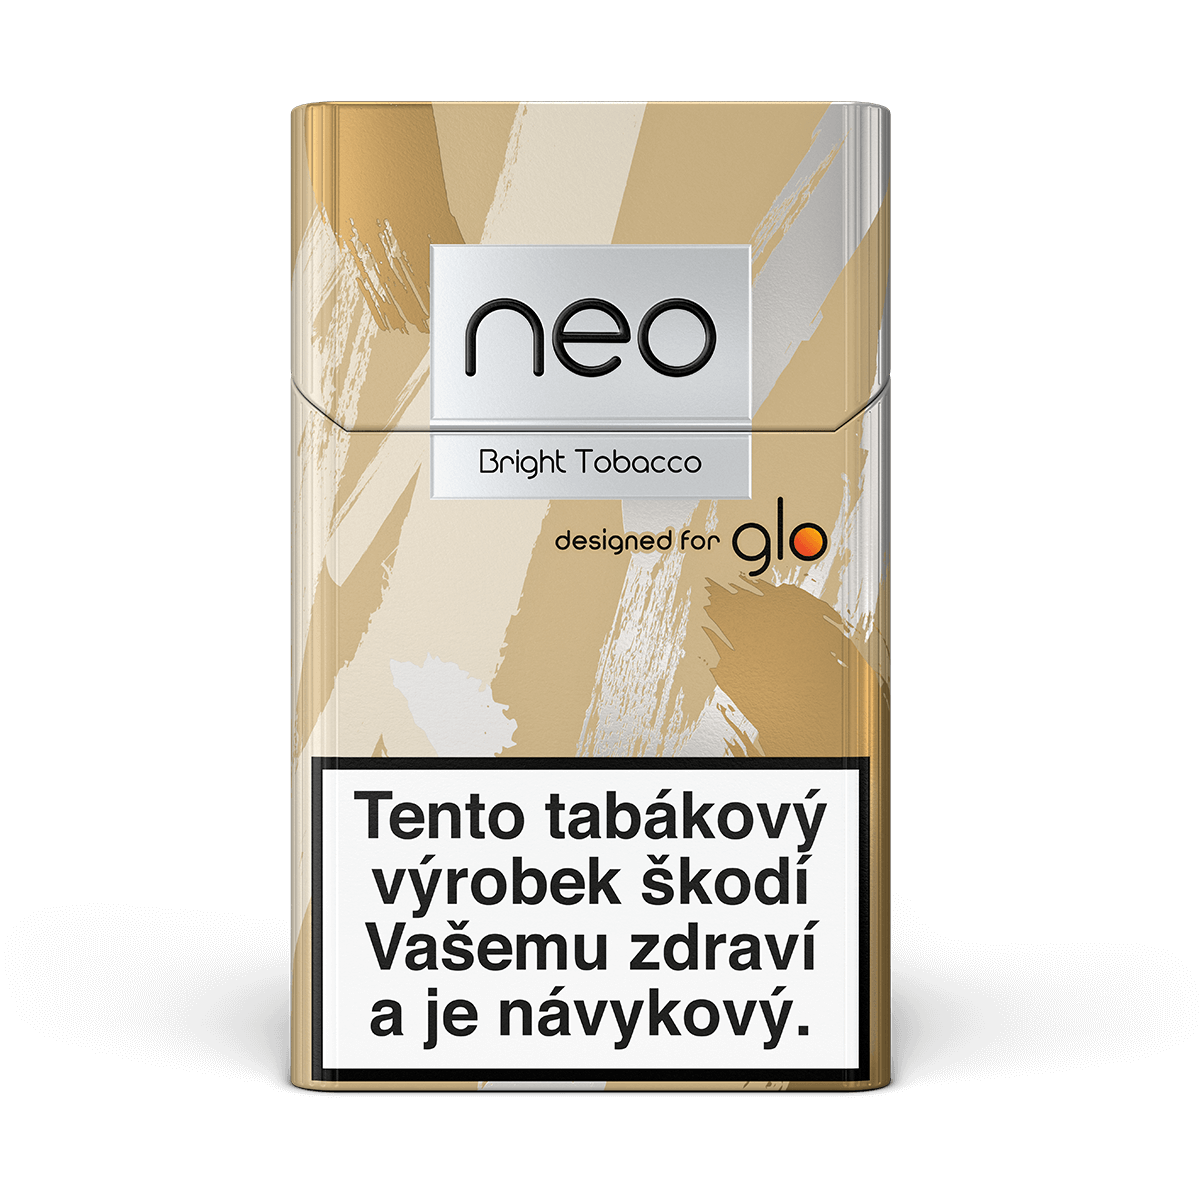 neo™ Bright Tobacco (karton) (compliant)